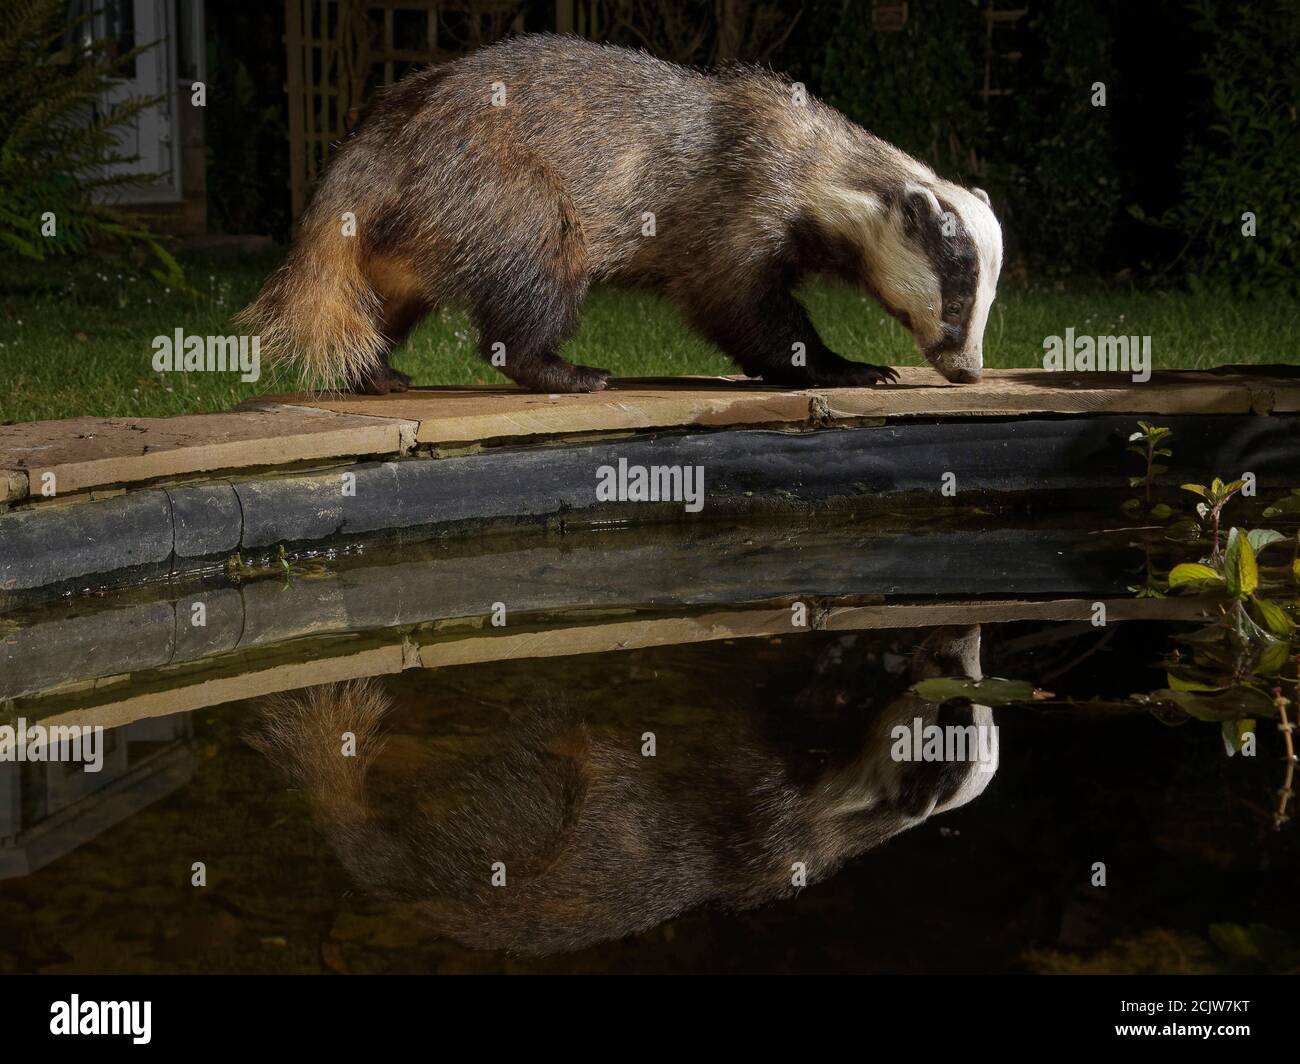 Le blaireau européen (Meles meles) se reflète dans un étang de la faune et de la flore qu'il visite pour boire de nuit, Wiltshire, Royaume-Uni, juin 2020 Banque D'Images